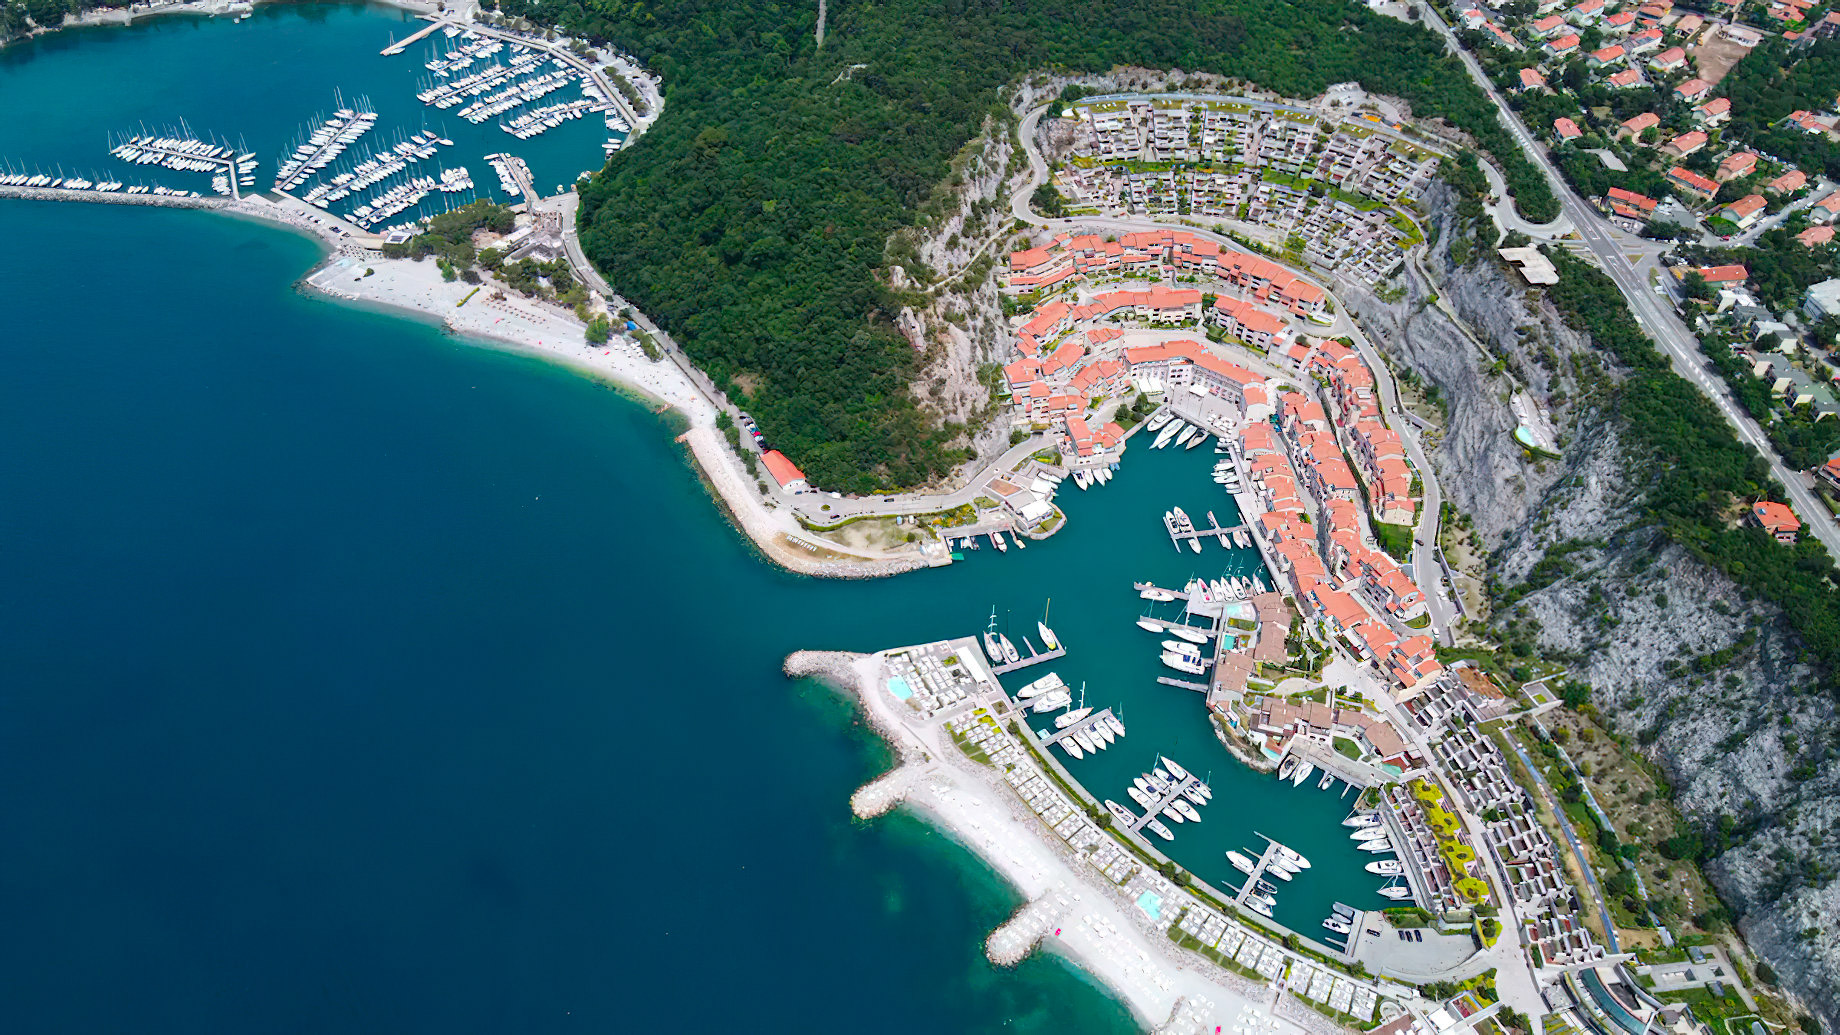 Tivoli Portopiccolo Sistiana Resort & Spa – Sistiana, Italy – Aerial View